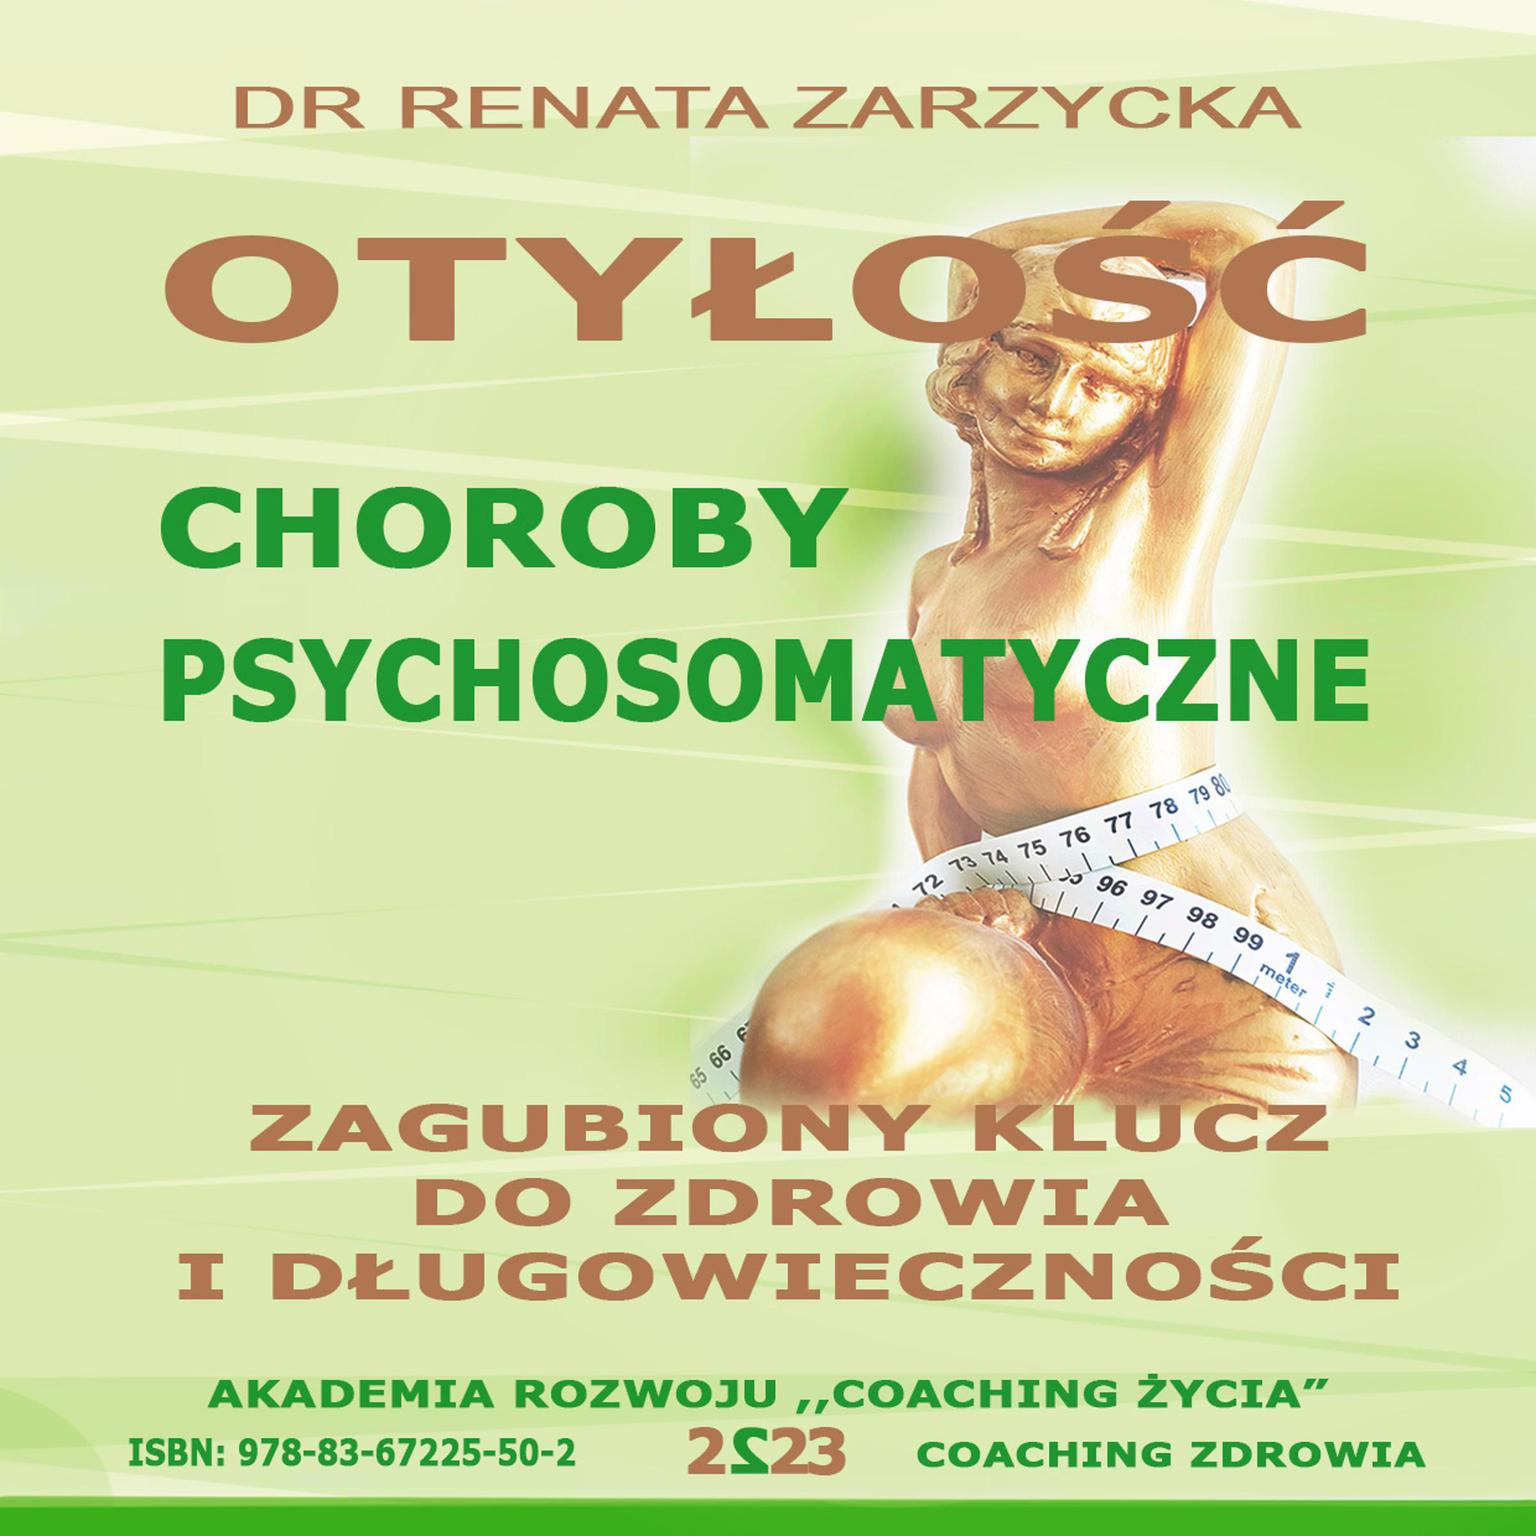 Otylosc. Choroby Psychosomatyczne. Zagubiony Klucz Do Zdrowia i Dlugowiecznosci. Audiobook, by Renata Zarzycka